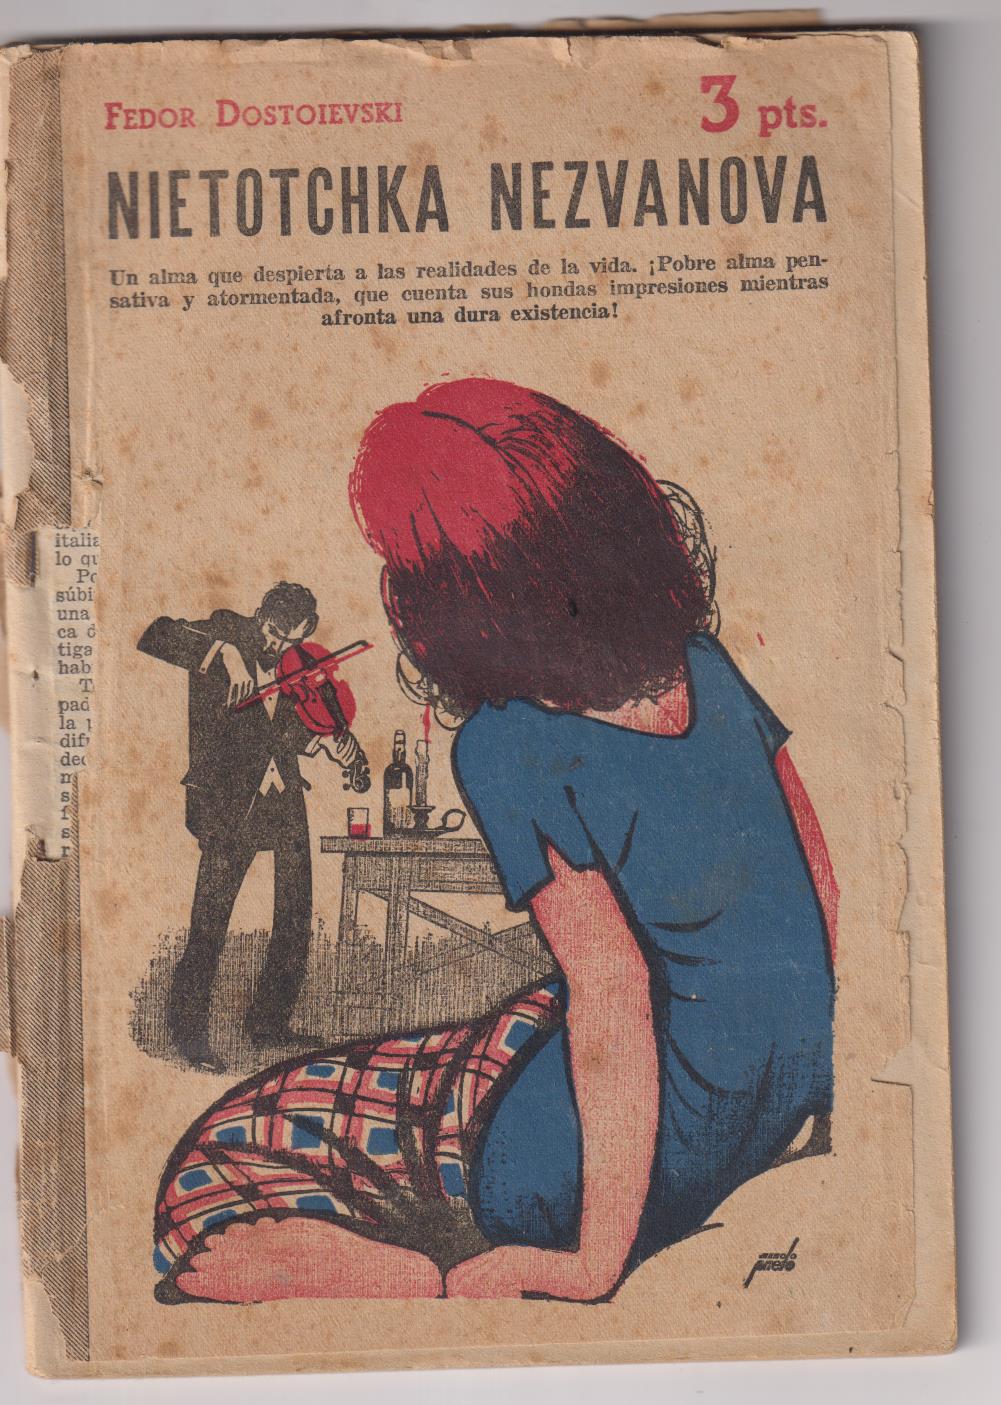 Revista Literaria Novelas y Cuentos. Nietotchka nezvanova por Fedor Dostoievski